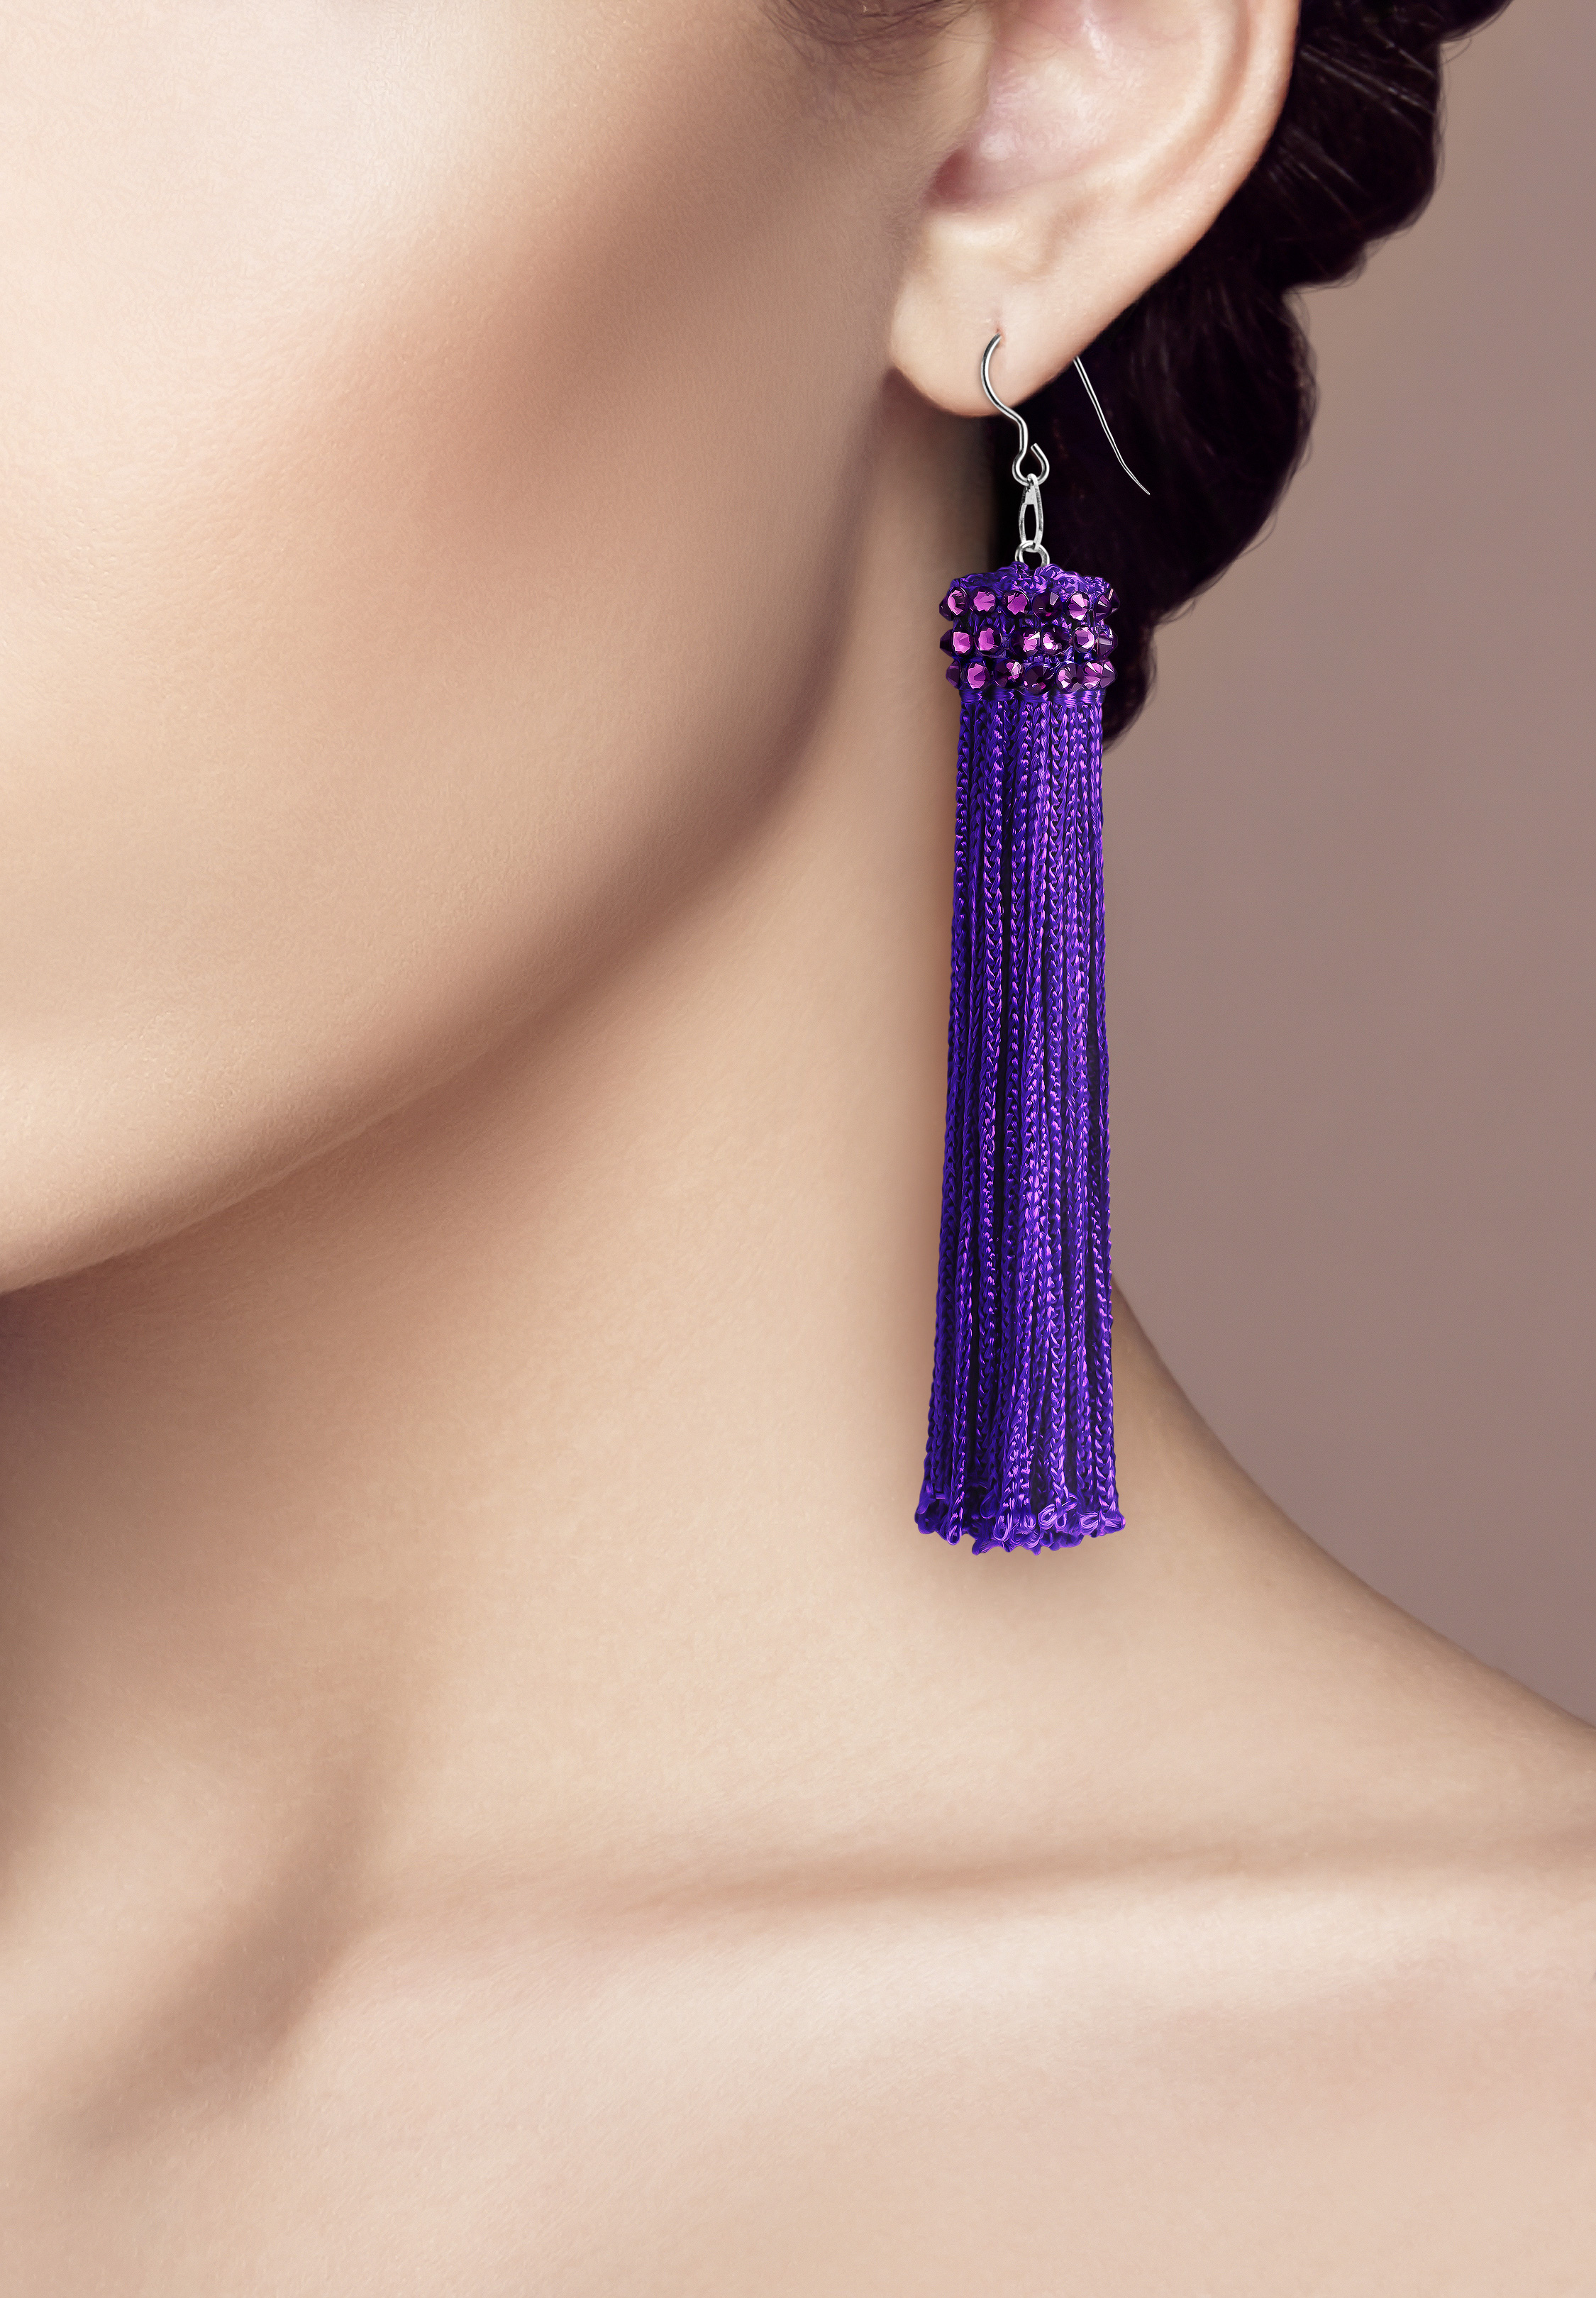 Black Purple Tassel Earrings / Soutache Earrings / Hematite Earrings / Navy  Blue Boho Earrings / Black Navy Fringe Earrings / Unique Jewelry - Etsy